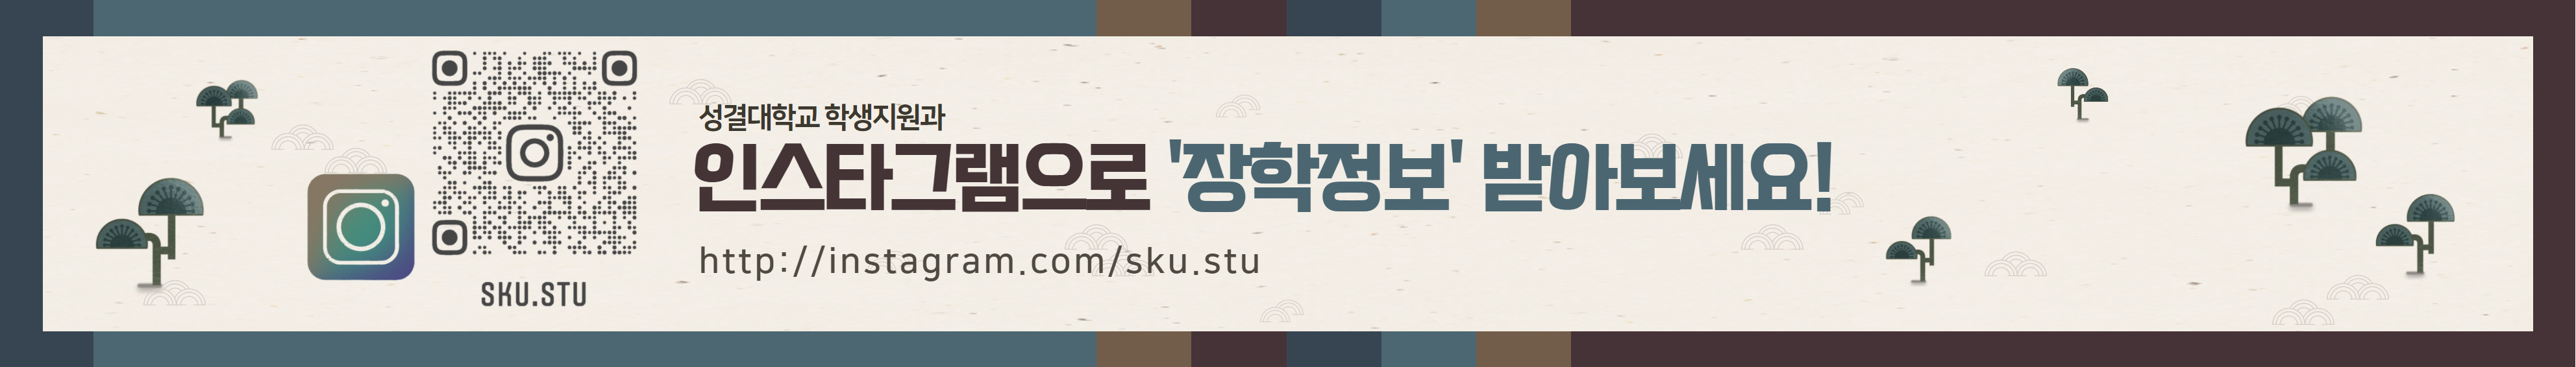 성결대학교 학생지원과 인스타그램으로 '장학정보' 받아보세요! http://instagram.com/sku.stu